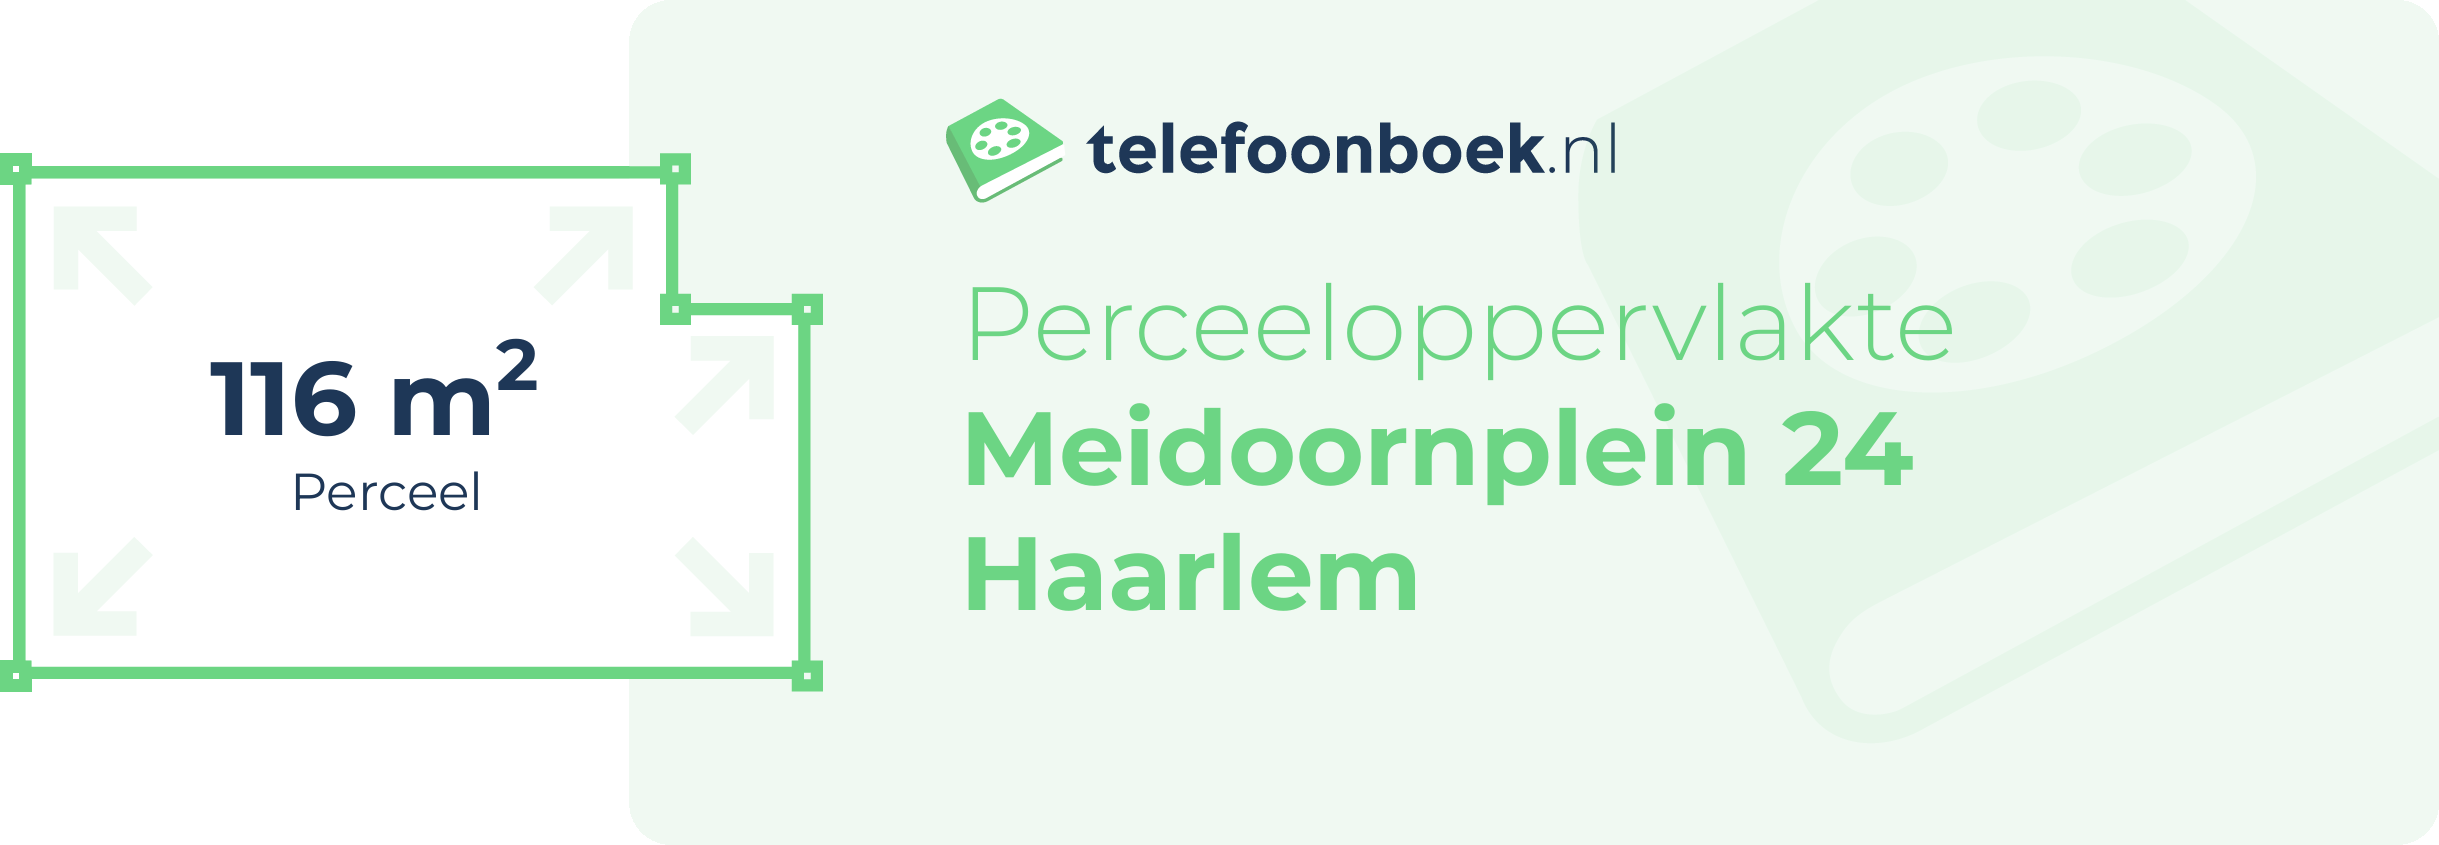 Perceeloppervlakte Meidoornplein 24 Haarlem